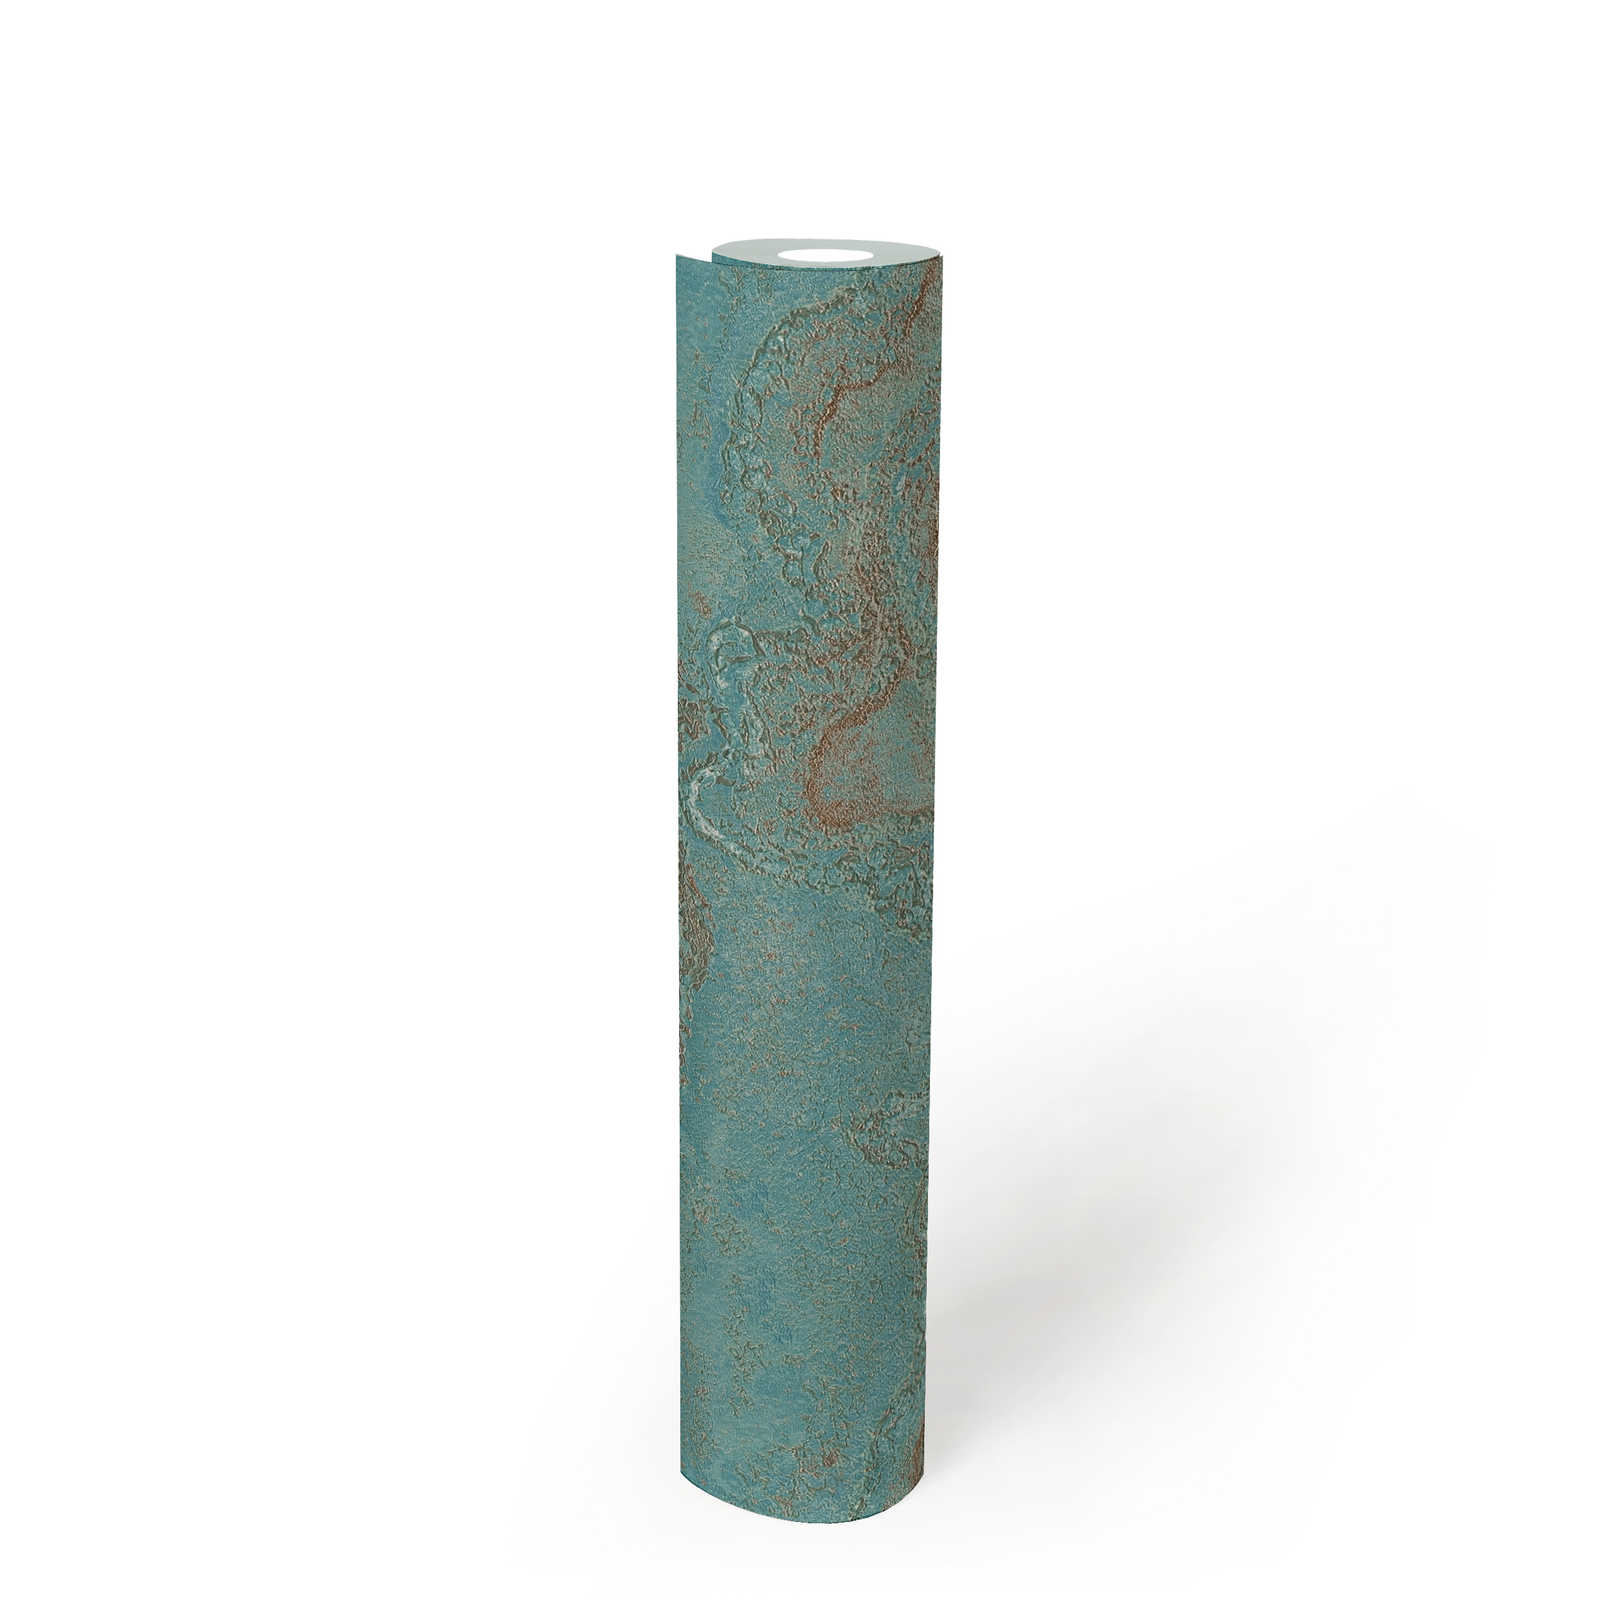             papier peint en papier intissé marbré avec effet métallique - bleu, turquoise, or
        